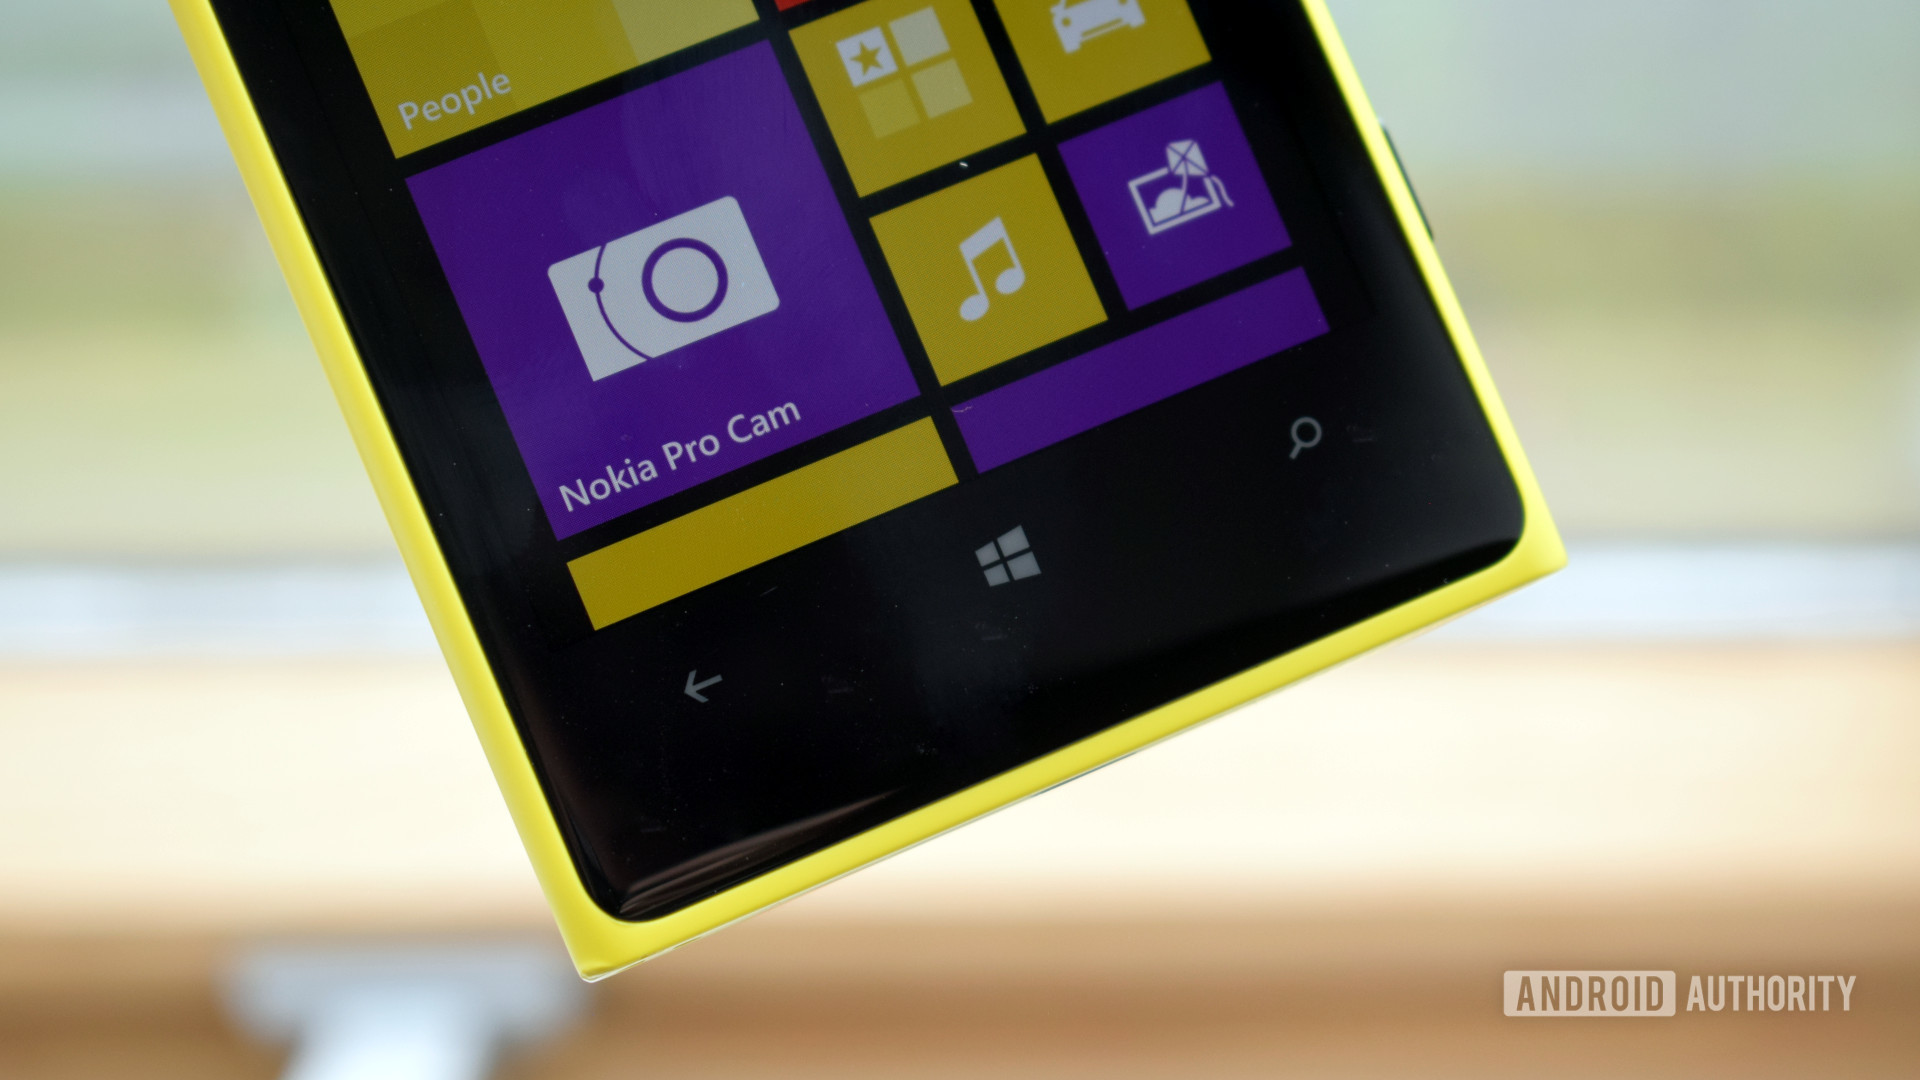 Nokia Lumia 1020 Pureview Windows button